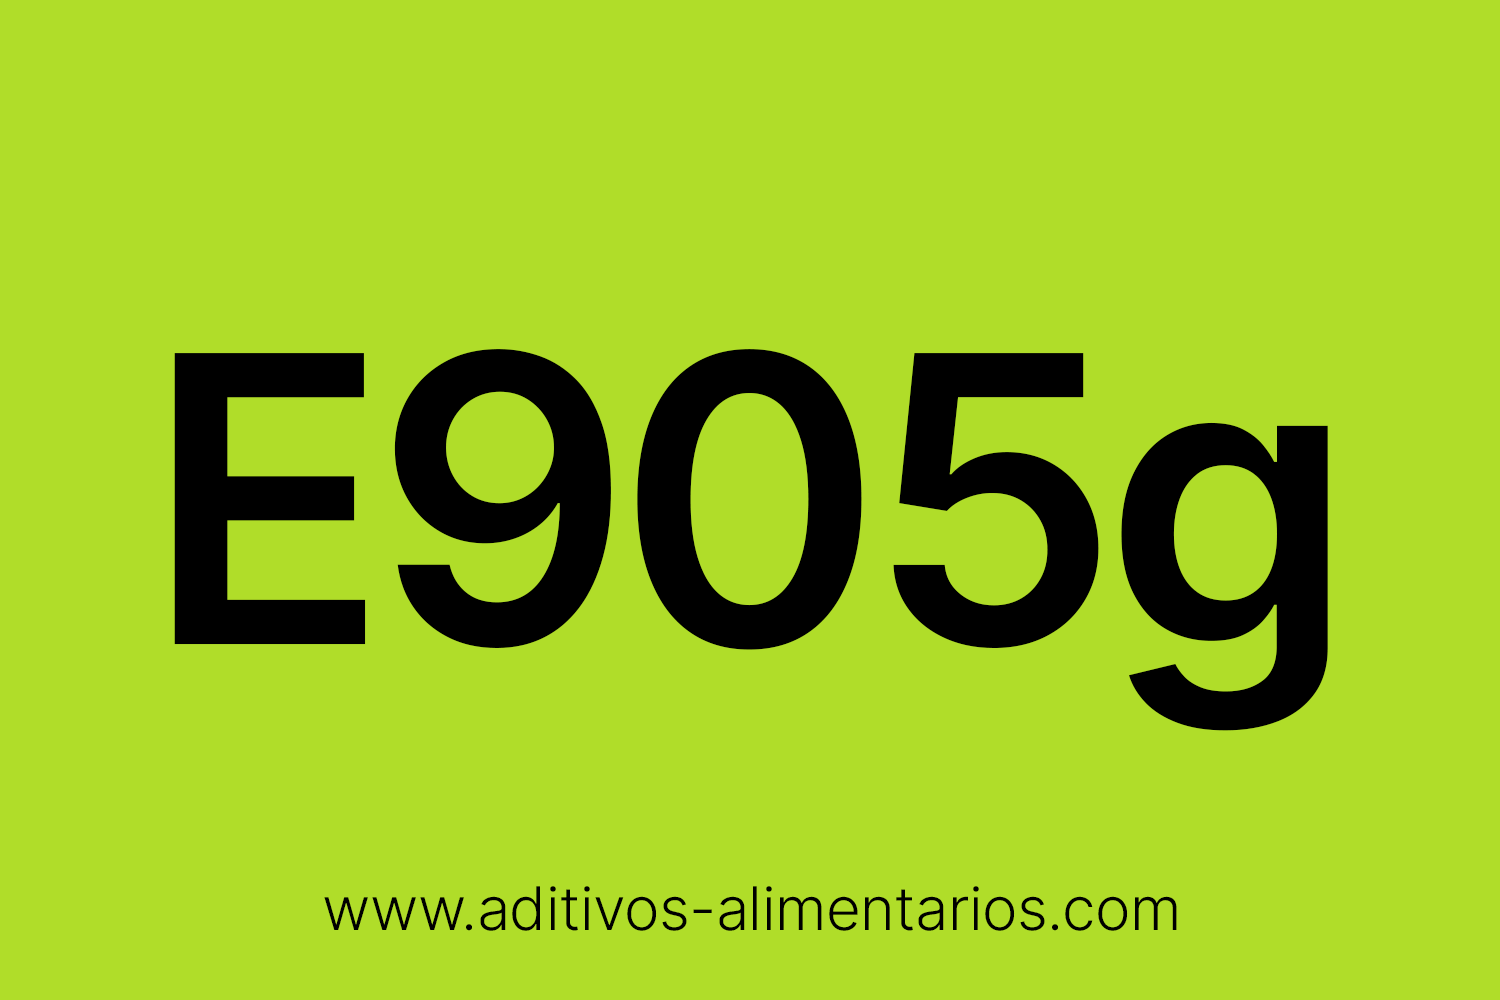 Aditivo Alimentario - E905g - Parafina Líquida de Viscosidad Media y Baja (Clase 3)